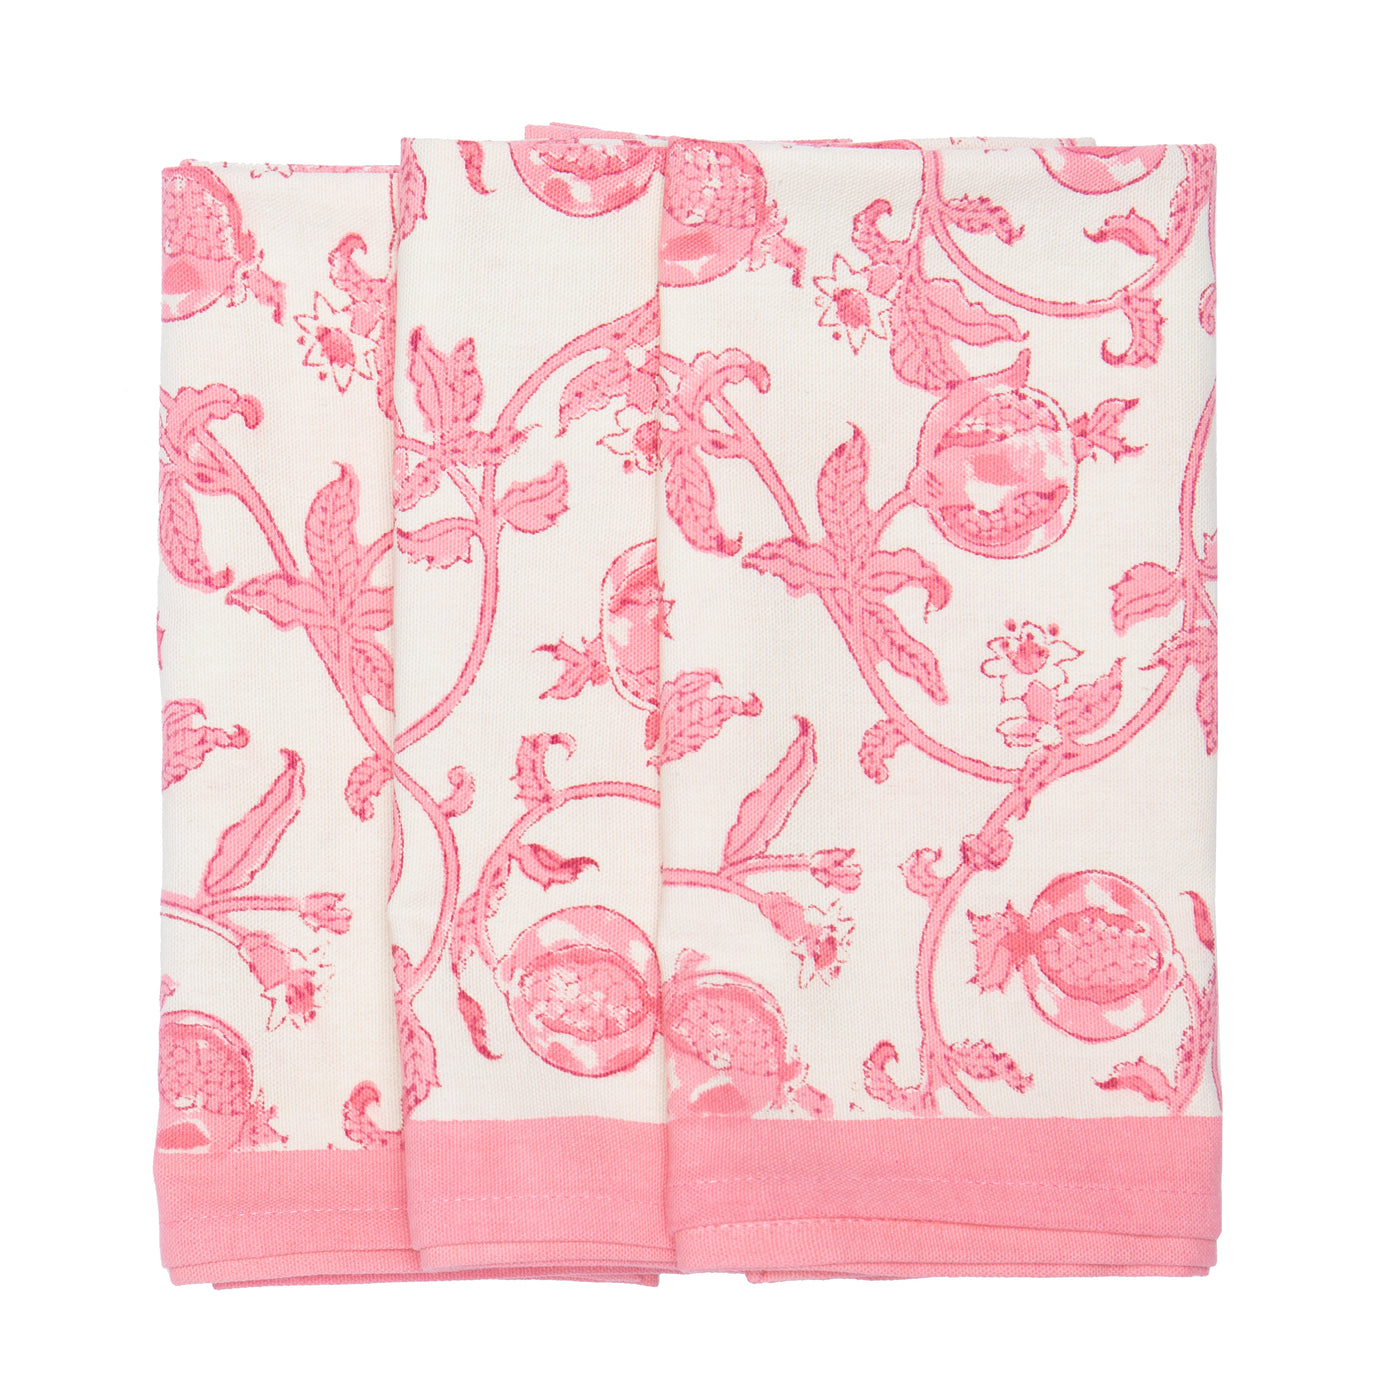 Granada Jaipur Pink Tea Towels, Set of 3